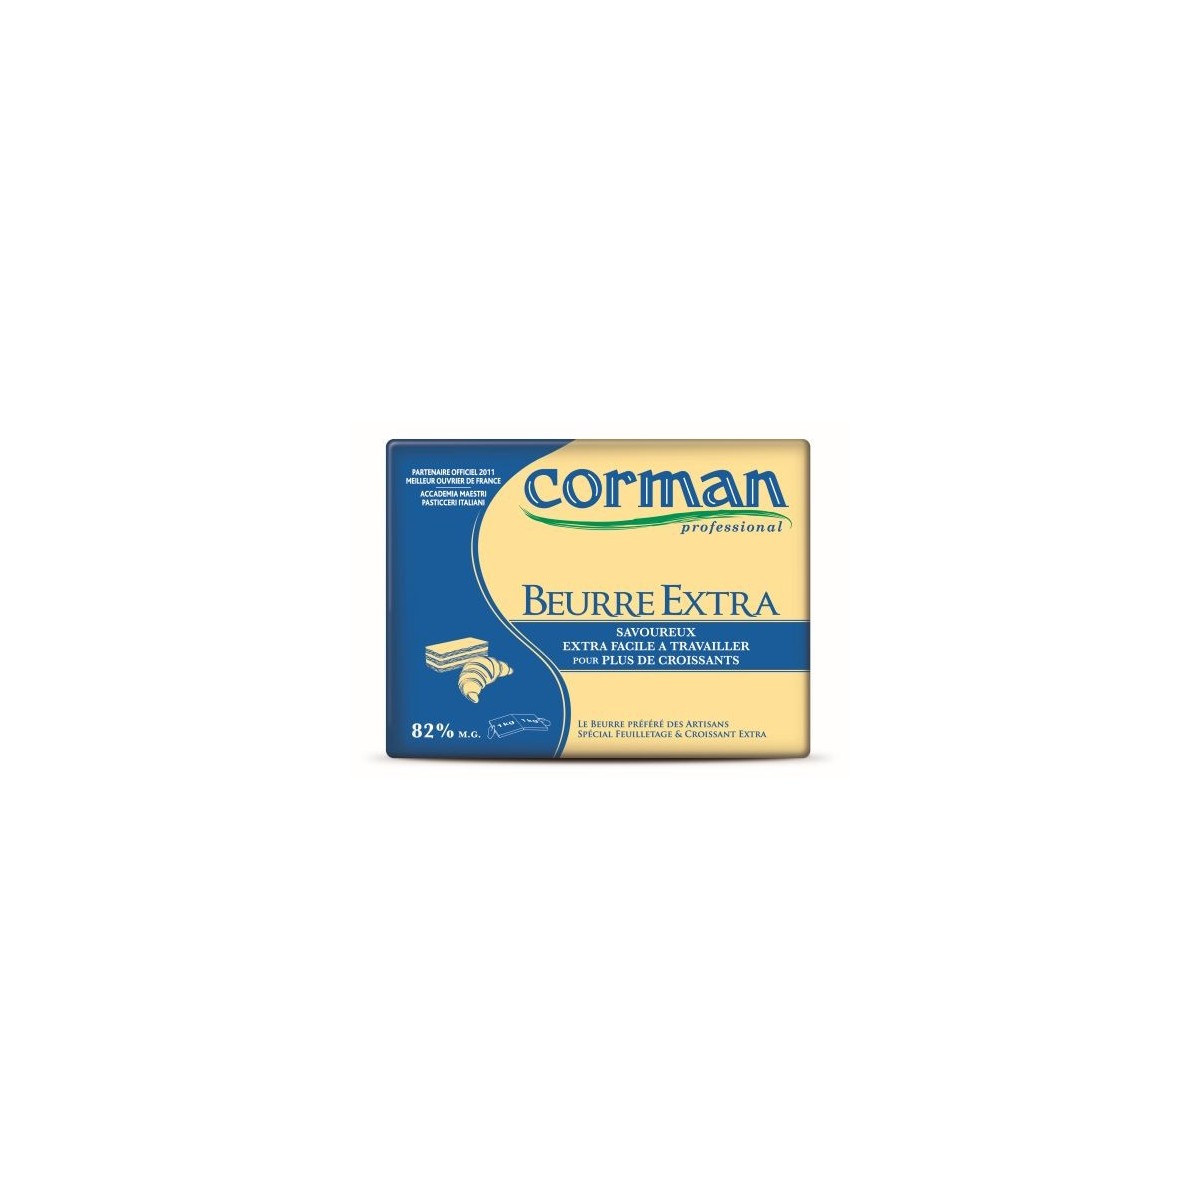 CORMAN BEURRE EXTRA 82% FEUILLETAGE &  CROISSANT NEUTRE 5 X 2KG 0029125 - 29777501